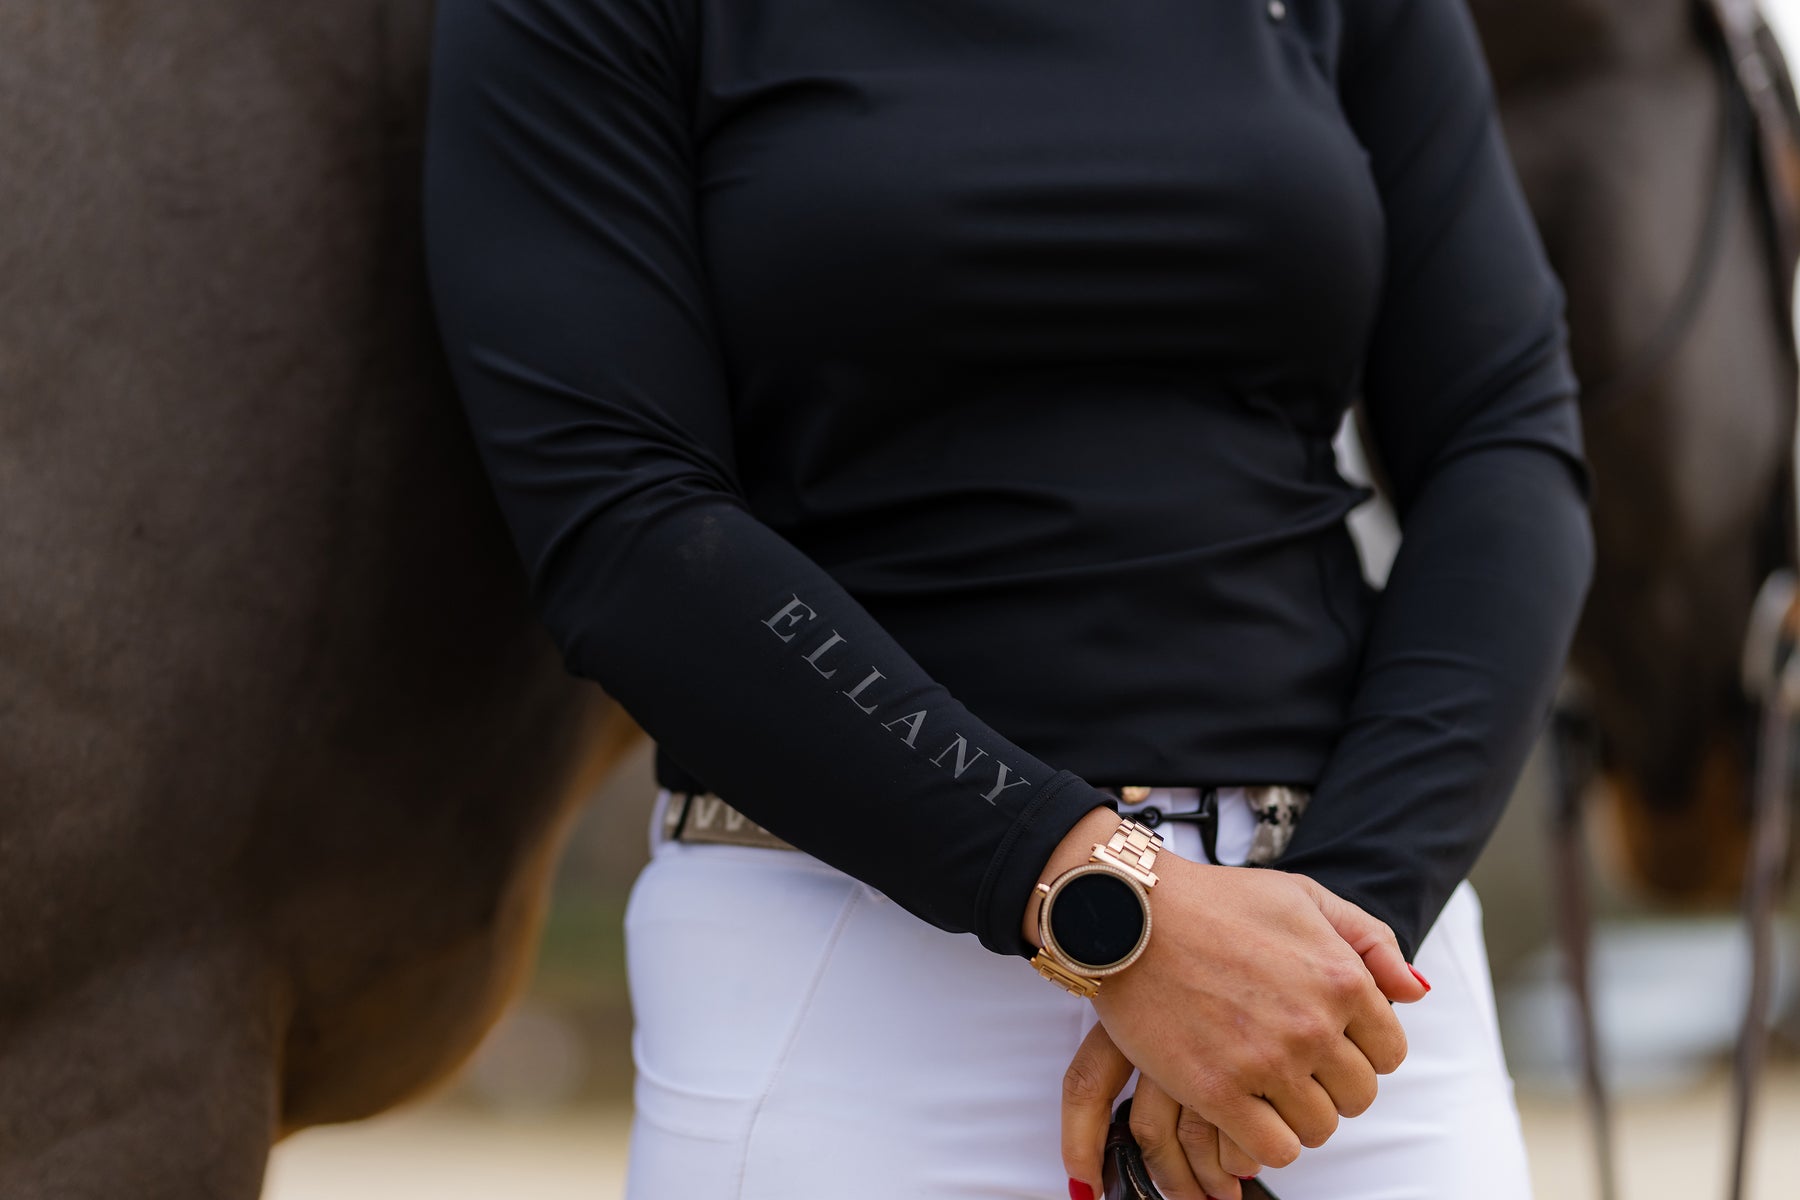 Ellany Fig Stirrup Elastic Belt — Le Fash - For the modern equestrian